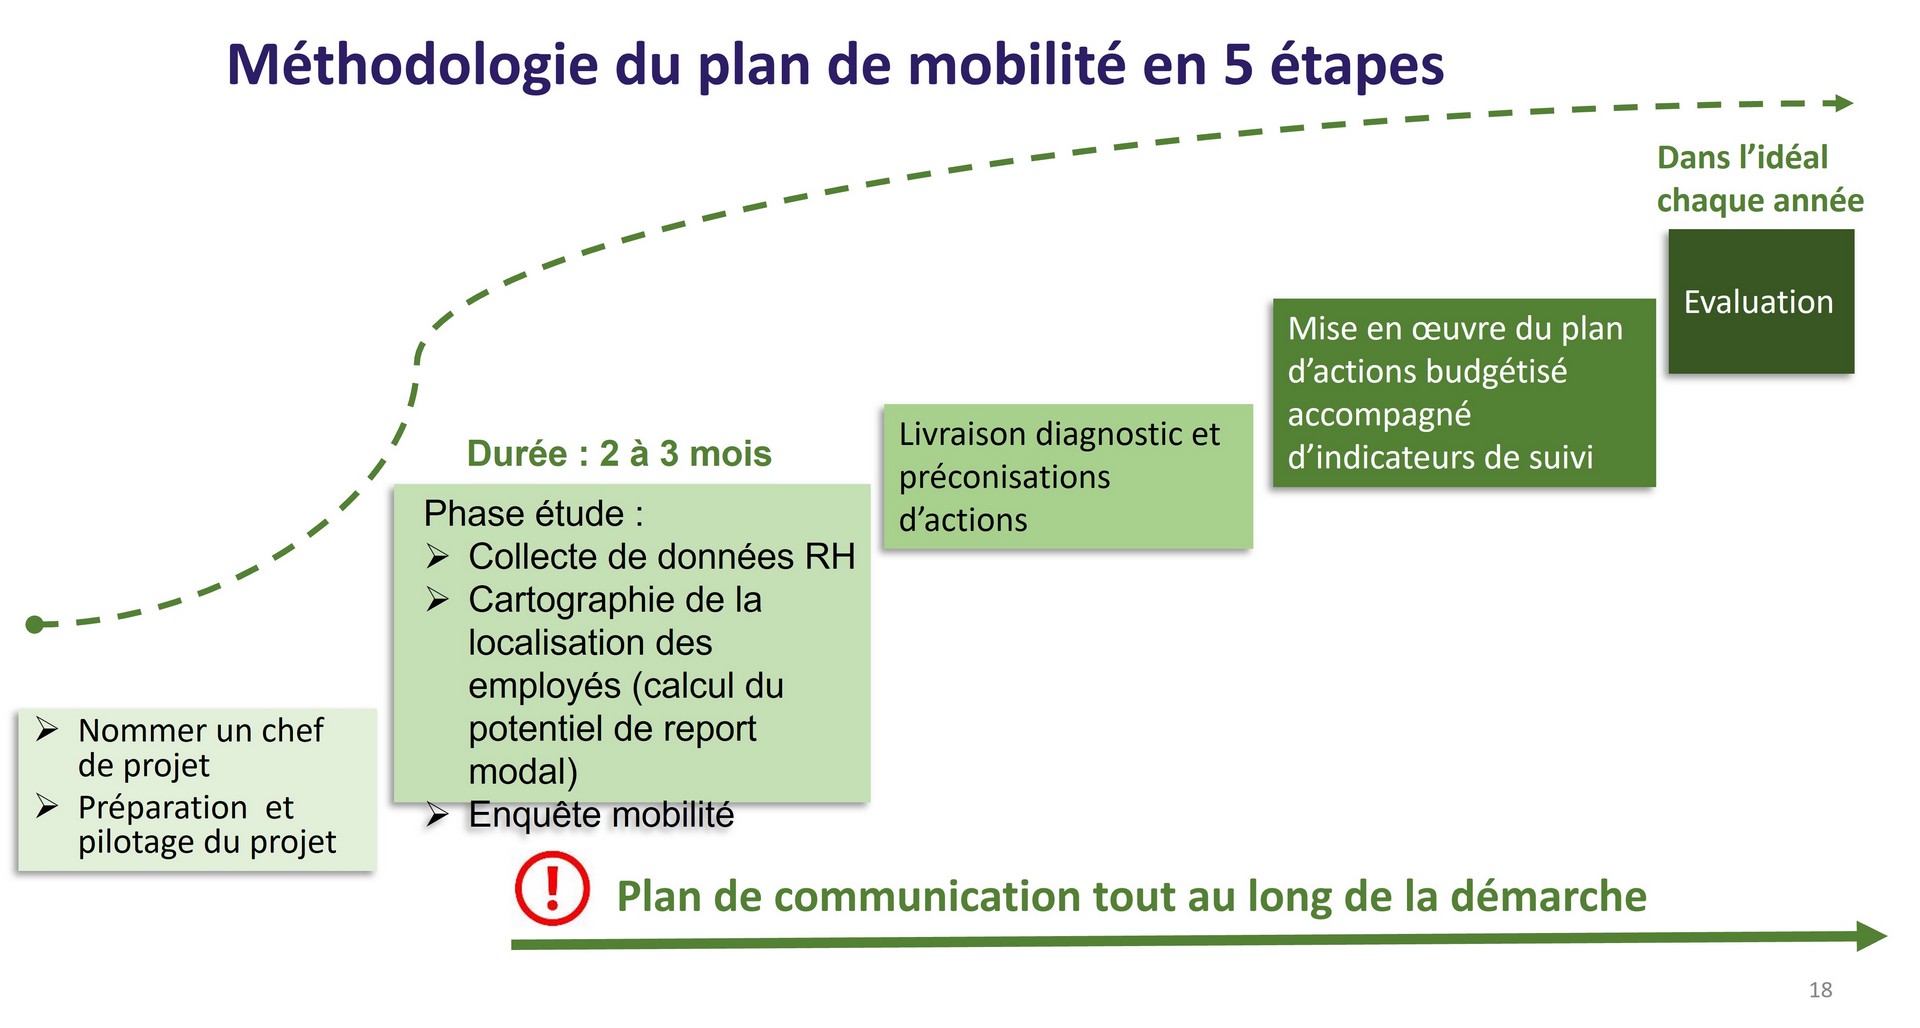 Schéma de méthodologie du plan de mobilite en 5 étapes